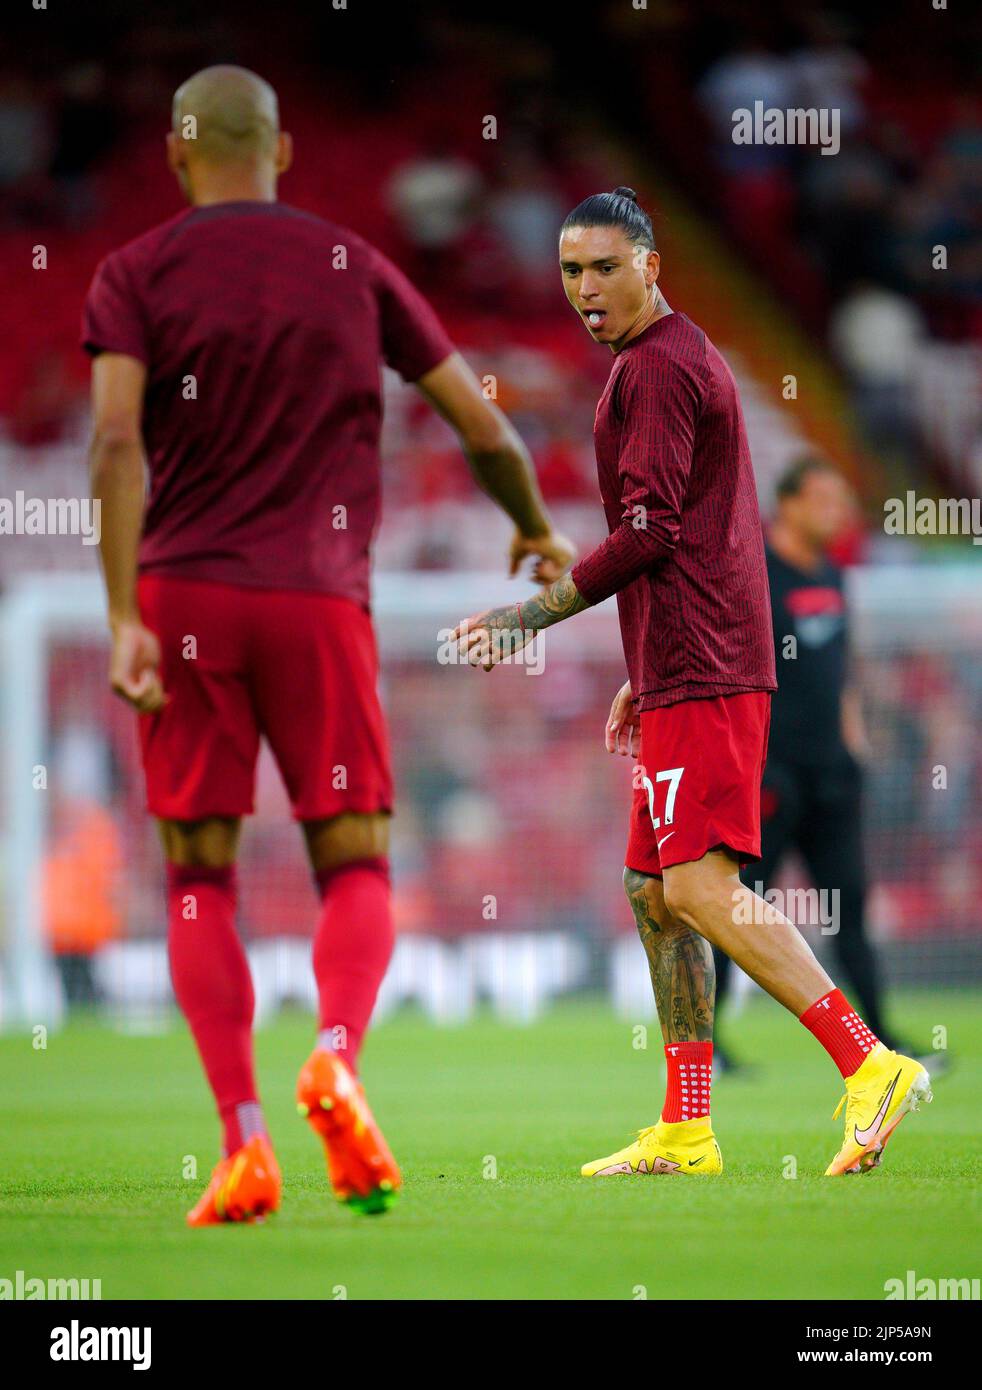 Darwin Nunez (derecha) del Liverpool se calienta antes del partido de la Premier League en Anfield, Liverpool. Fecha de la foto: Lunes 15 de agosto de 2022. Foto de stock